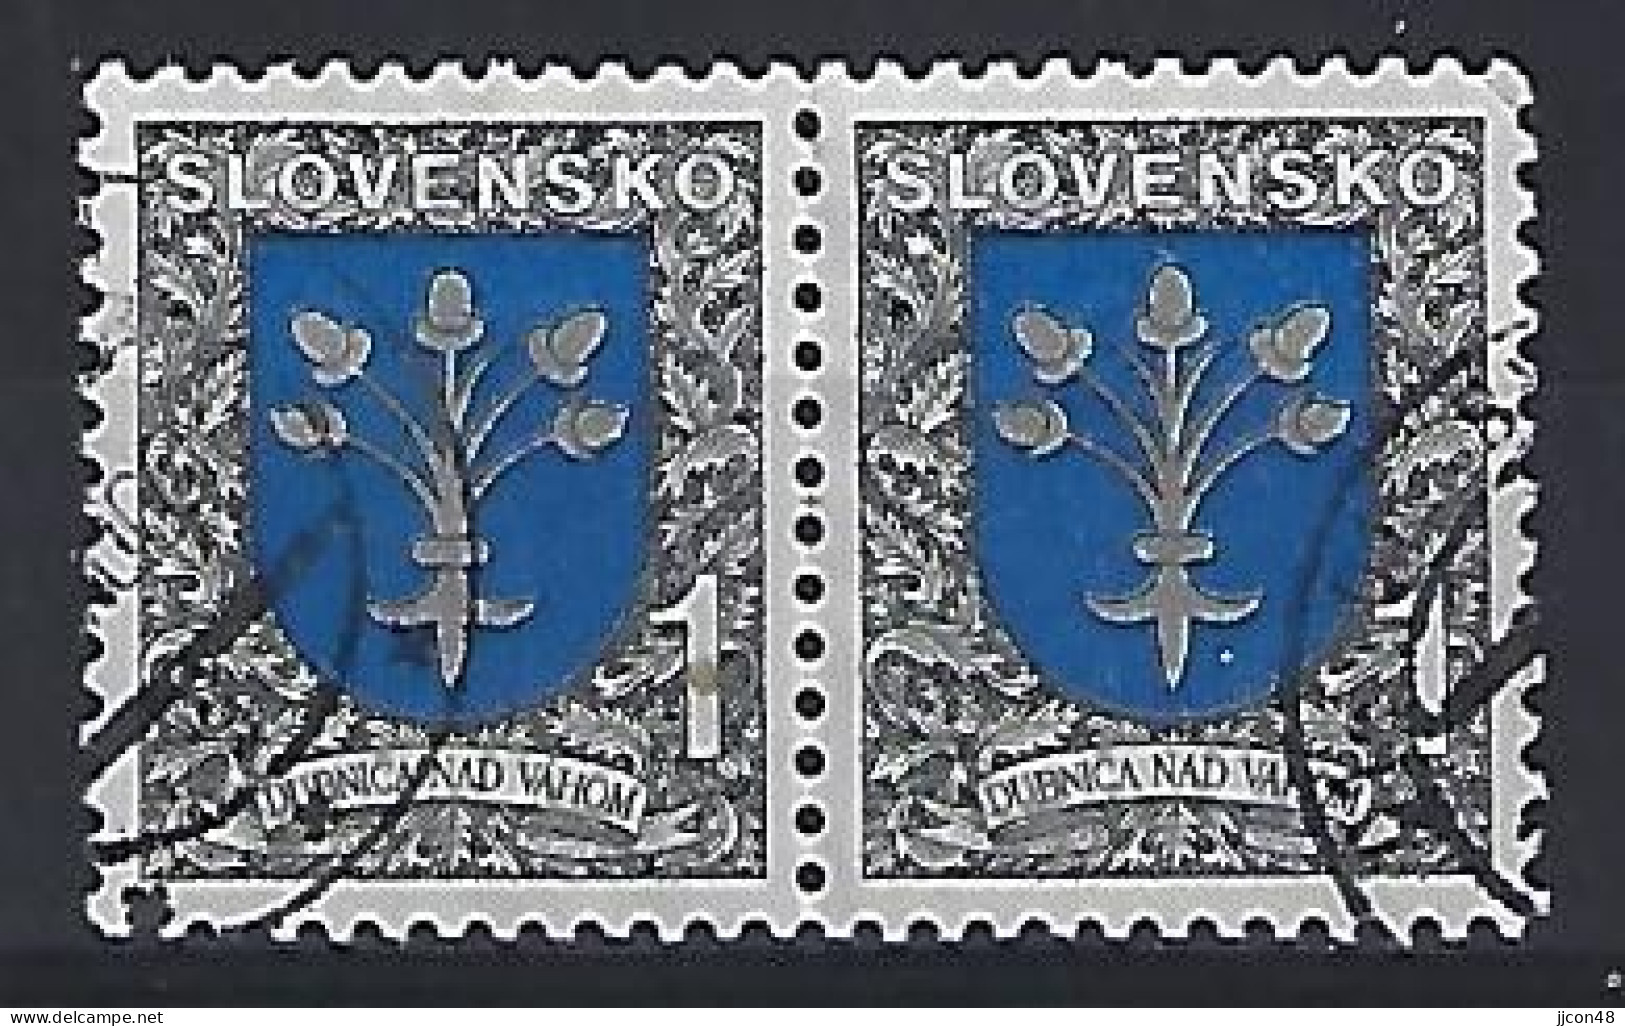 Slovakia 1993  City Arms; Dobnica Nad Vahom (o) Mi.177 - Used Stamps